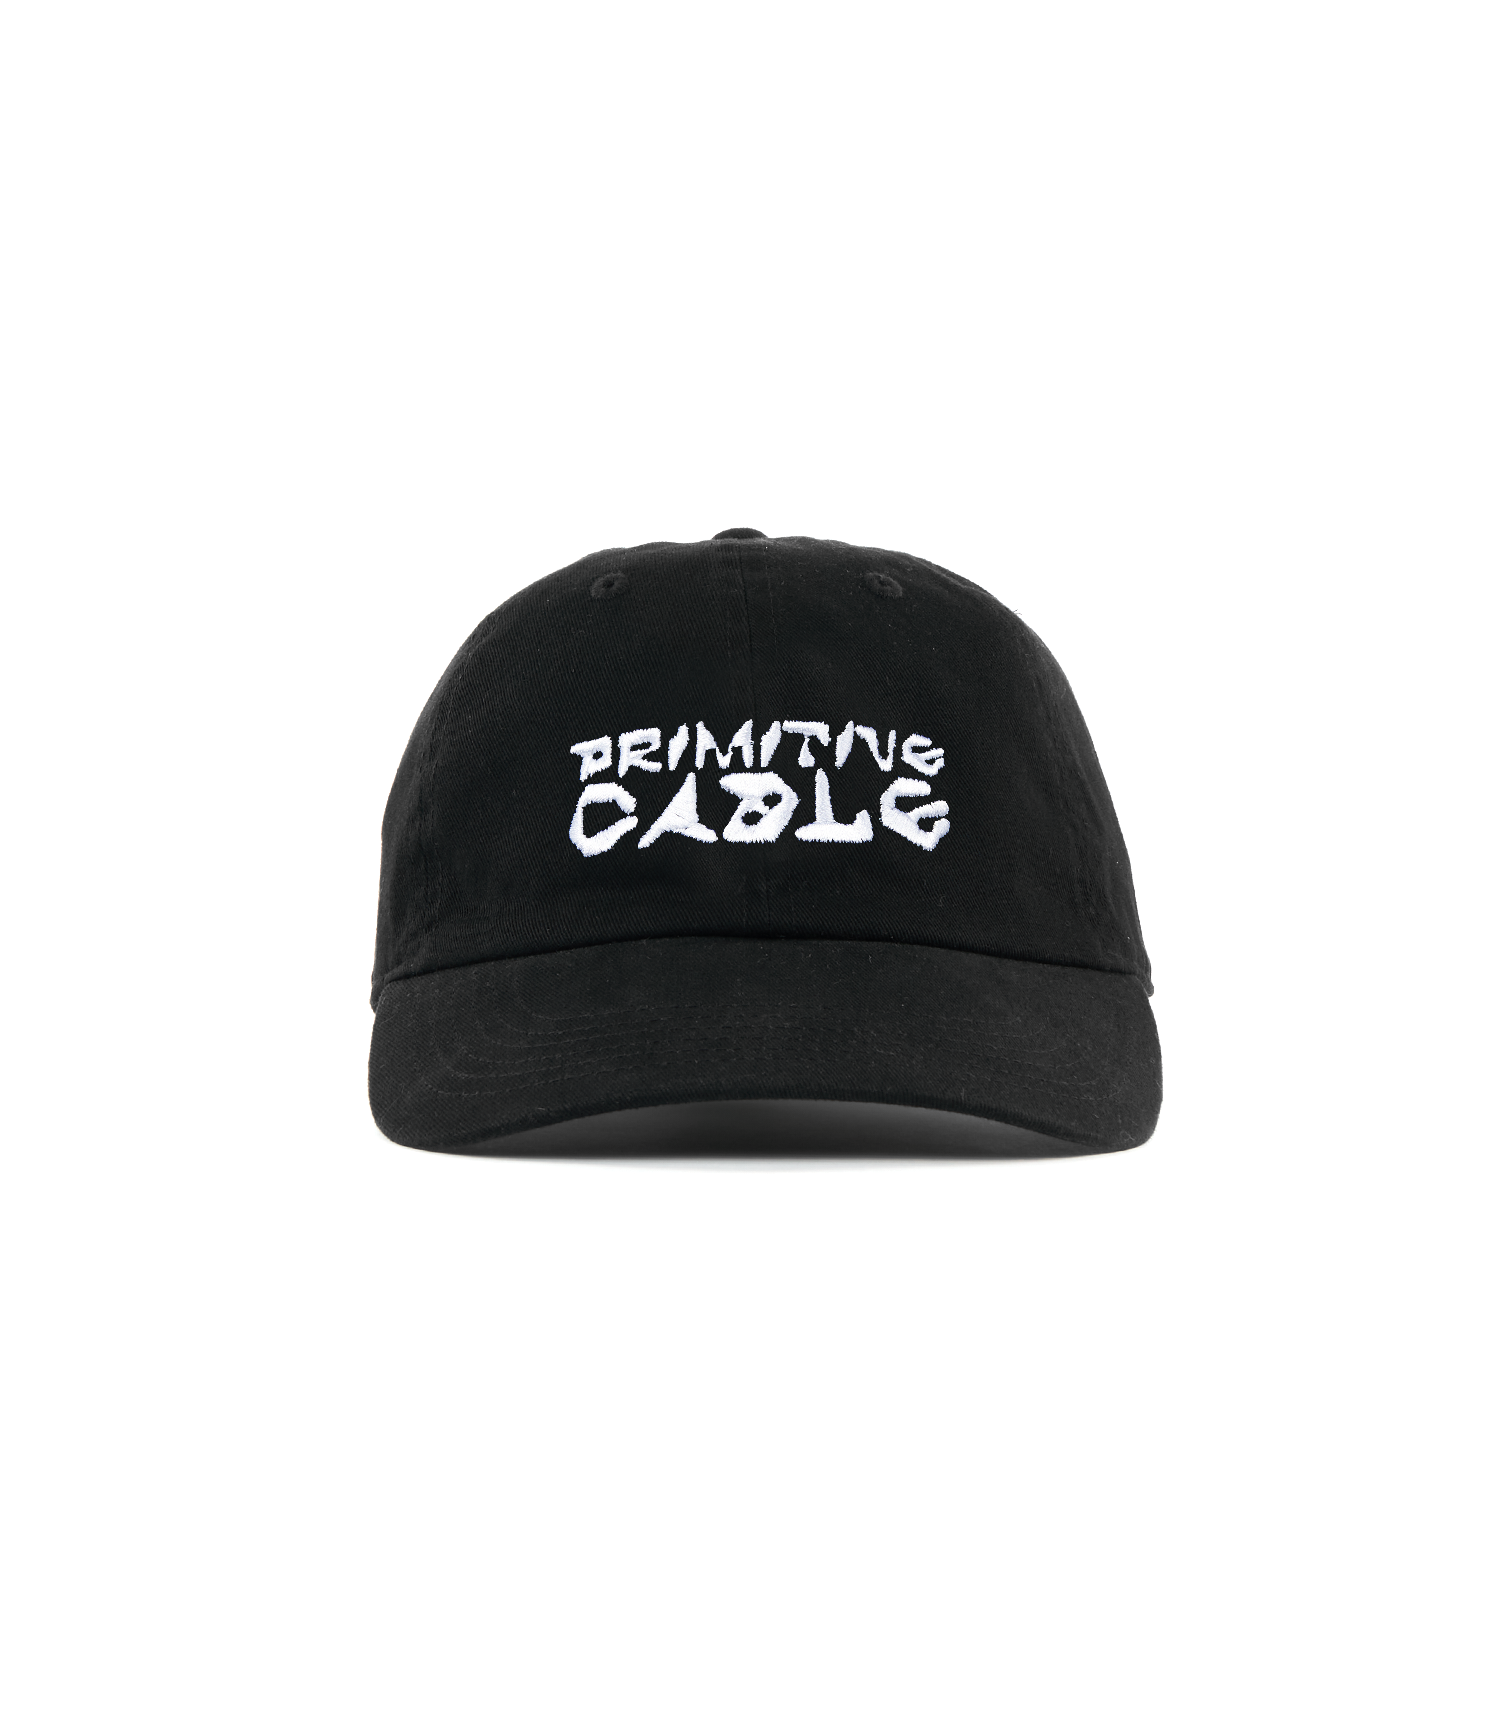 Primitive Cable Hat - Black